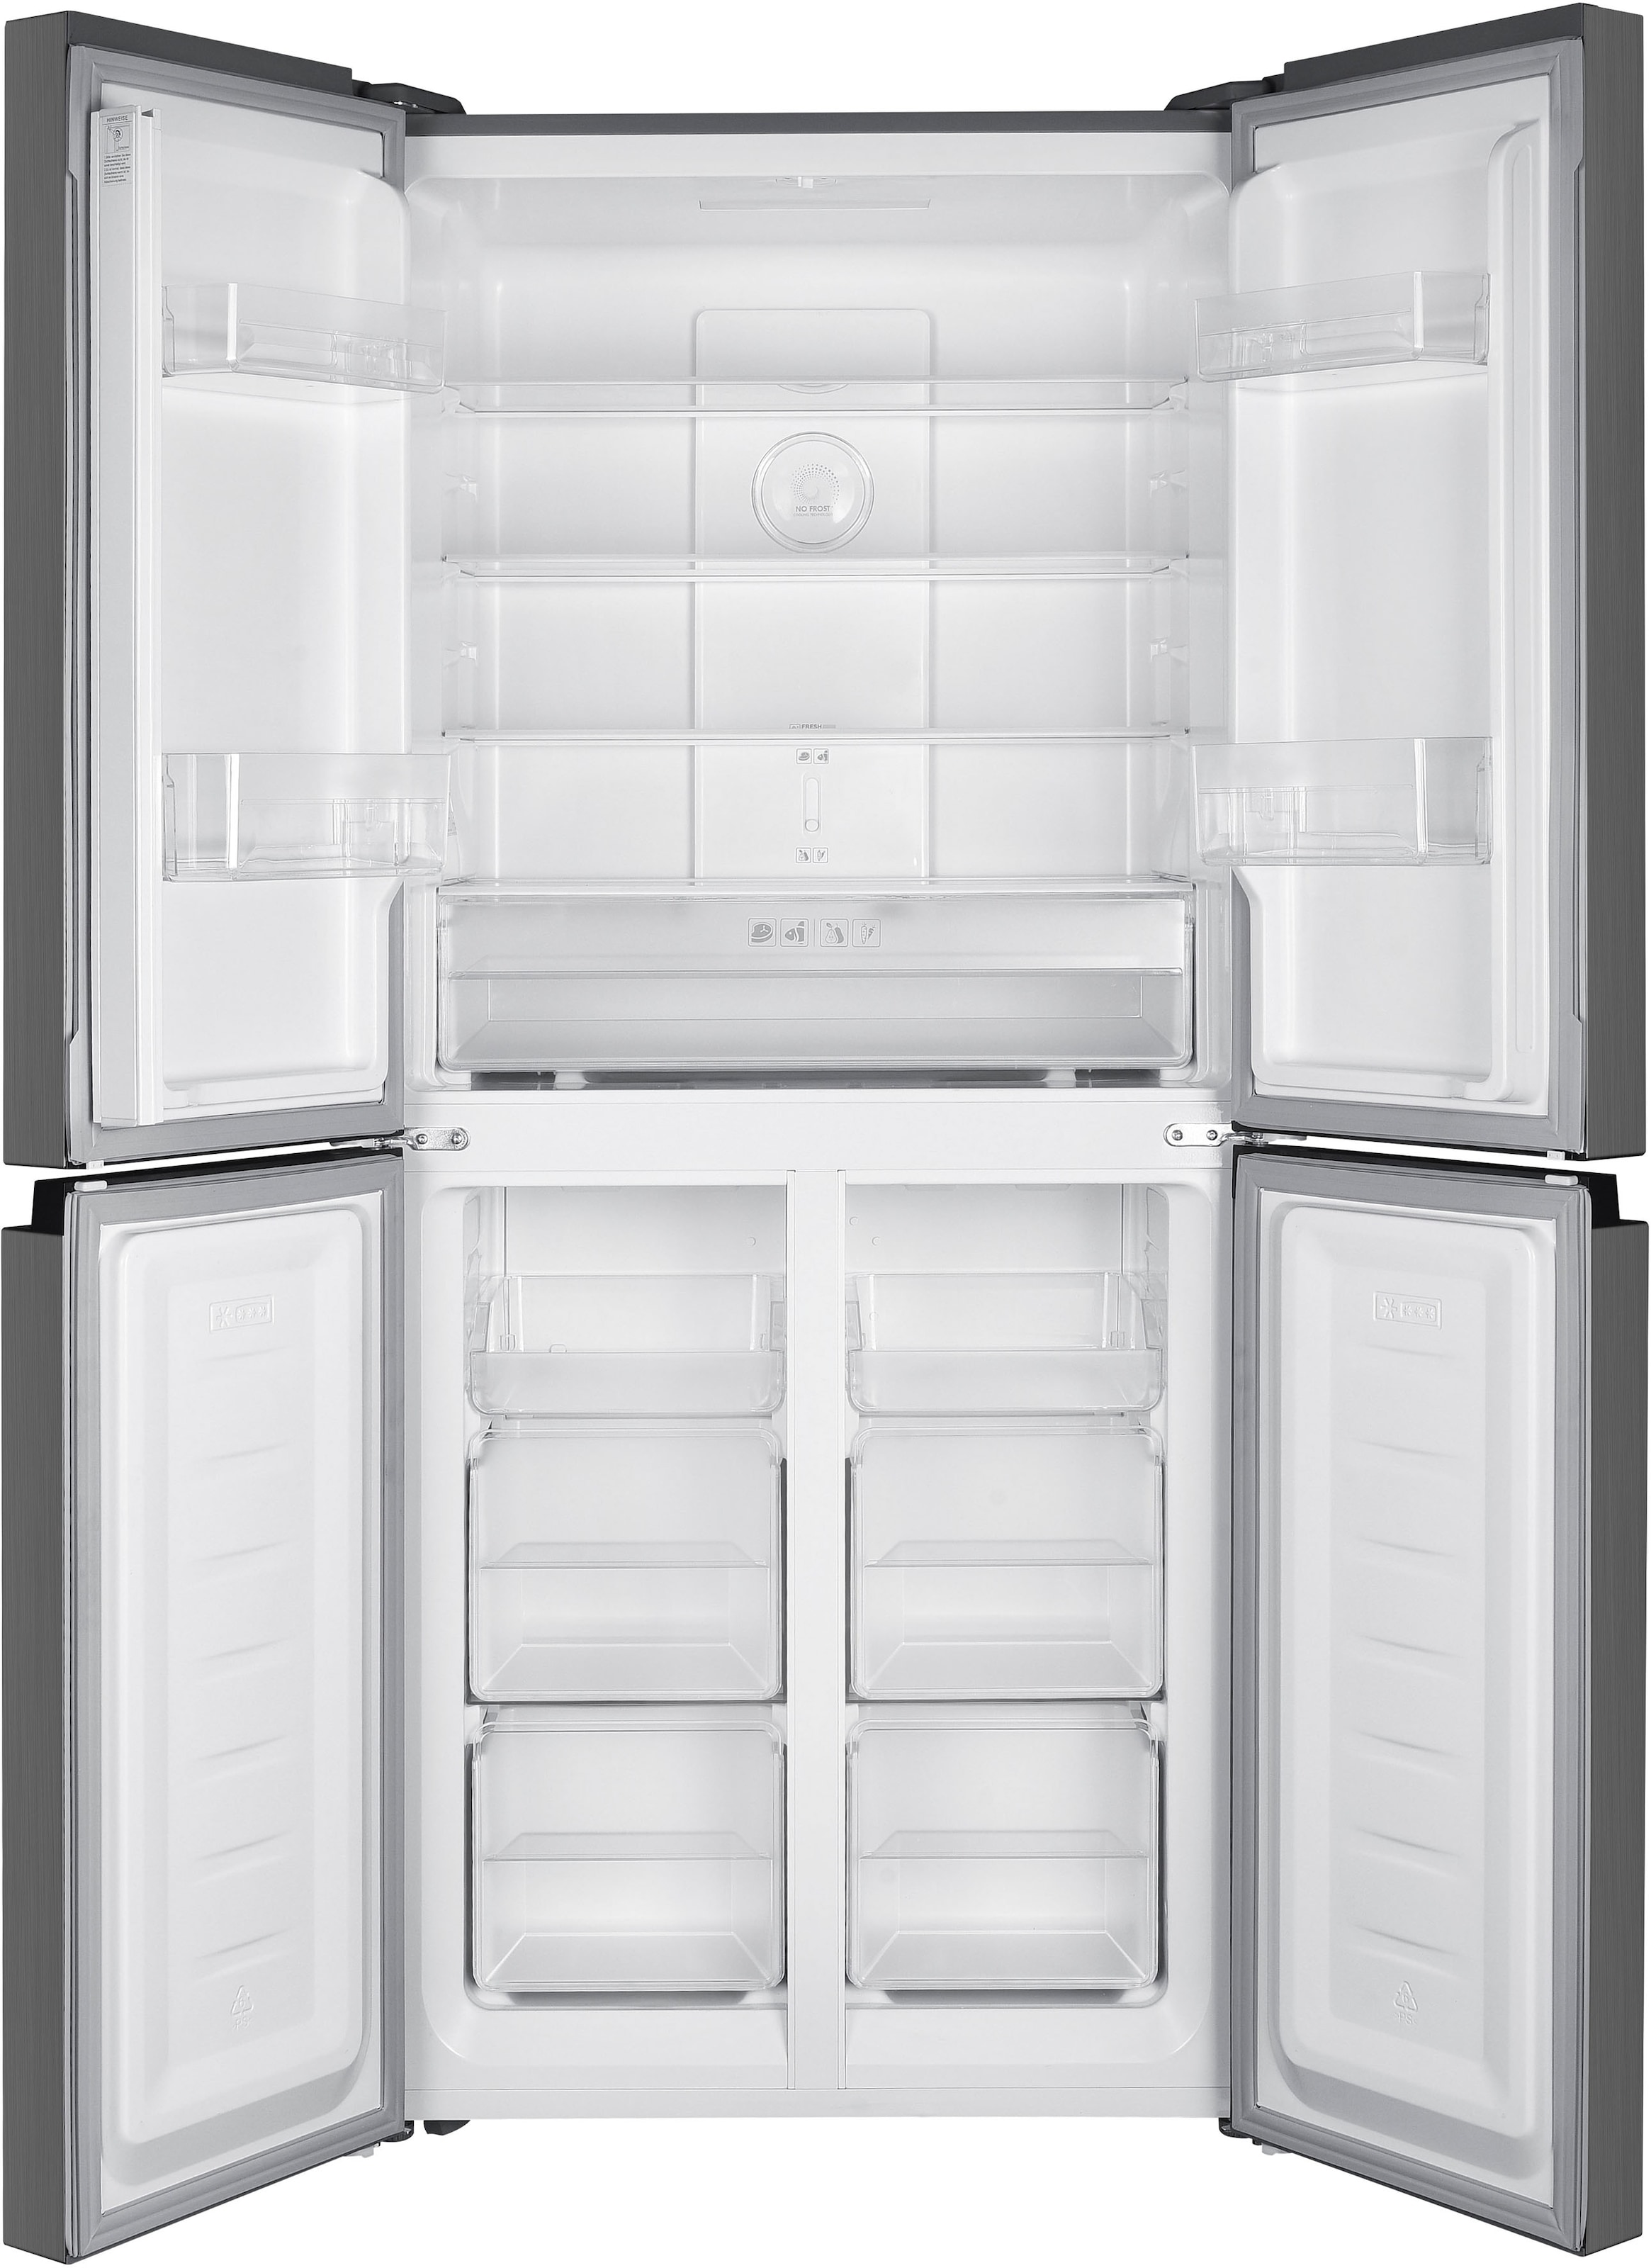 Hanseatic Multi Door, HCDD18080EI, 180,0 cm hoch, 79,0 cm breit, NoFrost,  Türalarm kaufen | Side-by-Side Kühlschränke